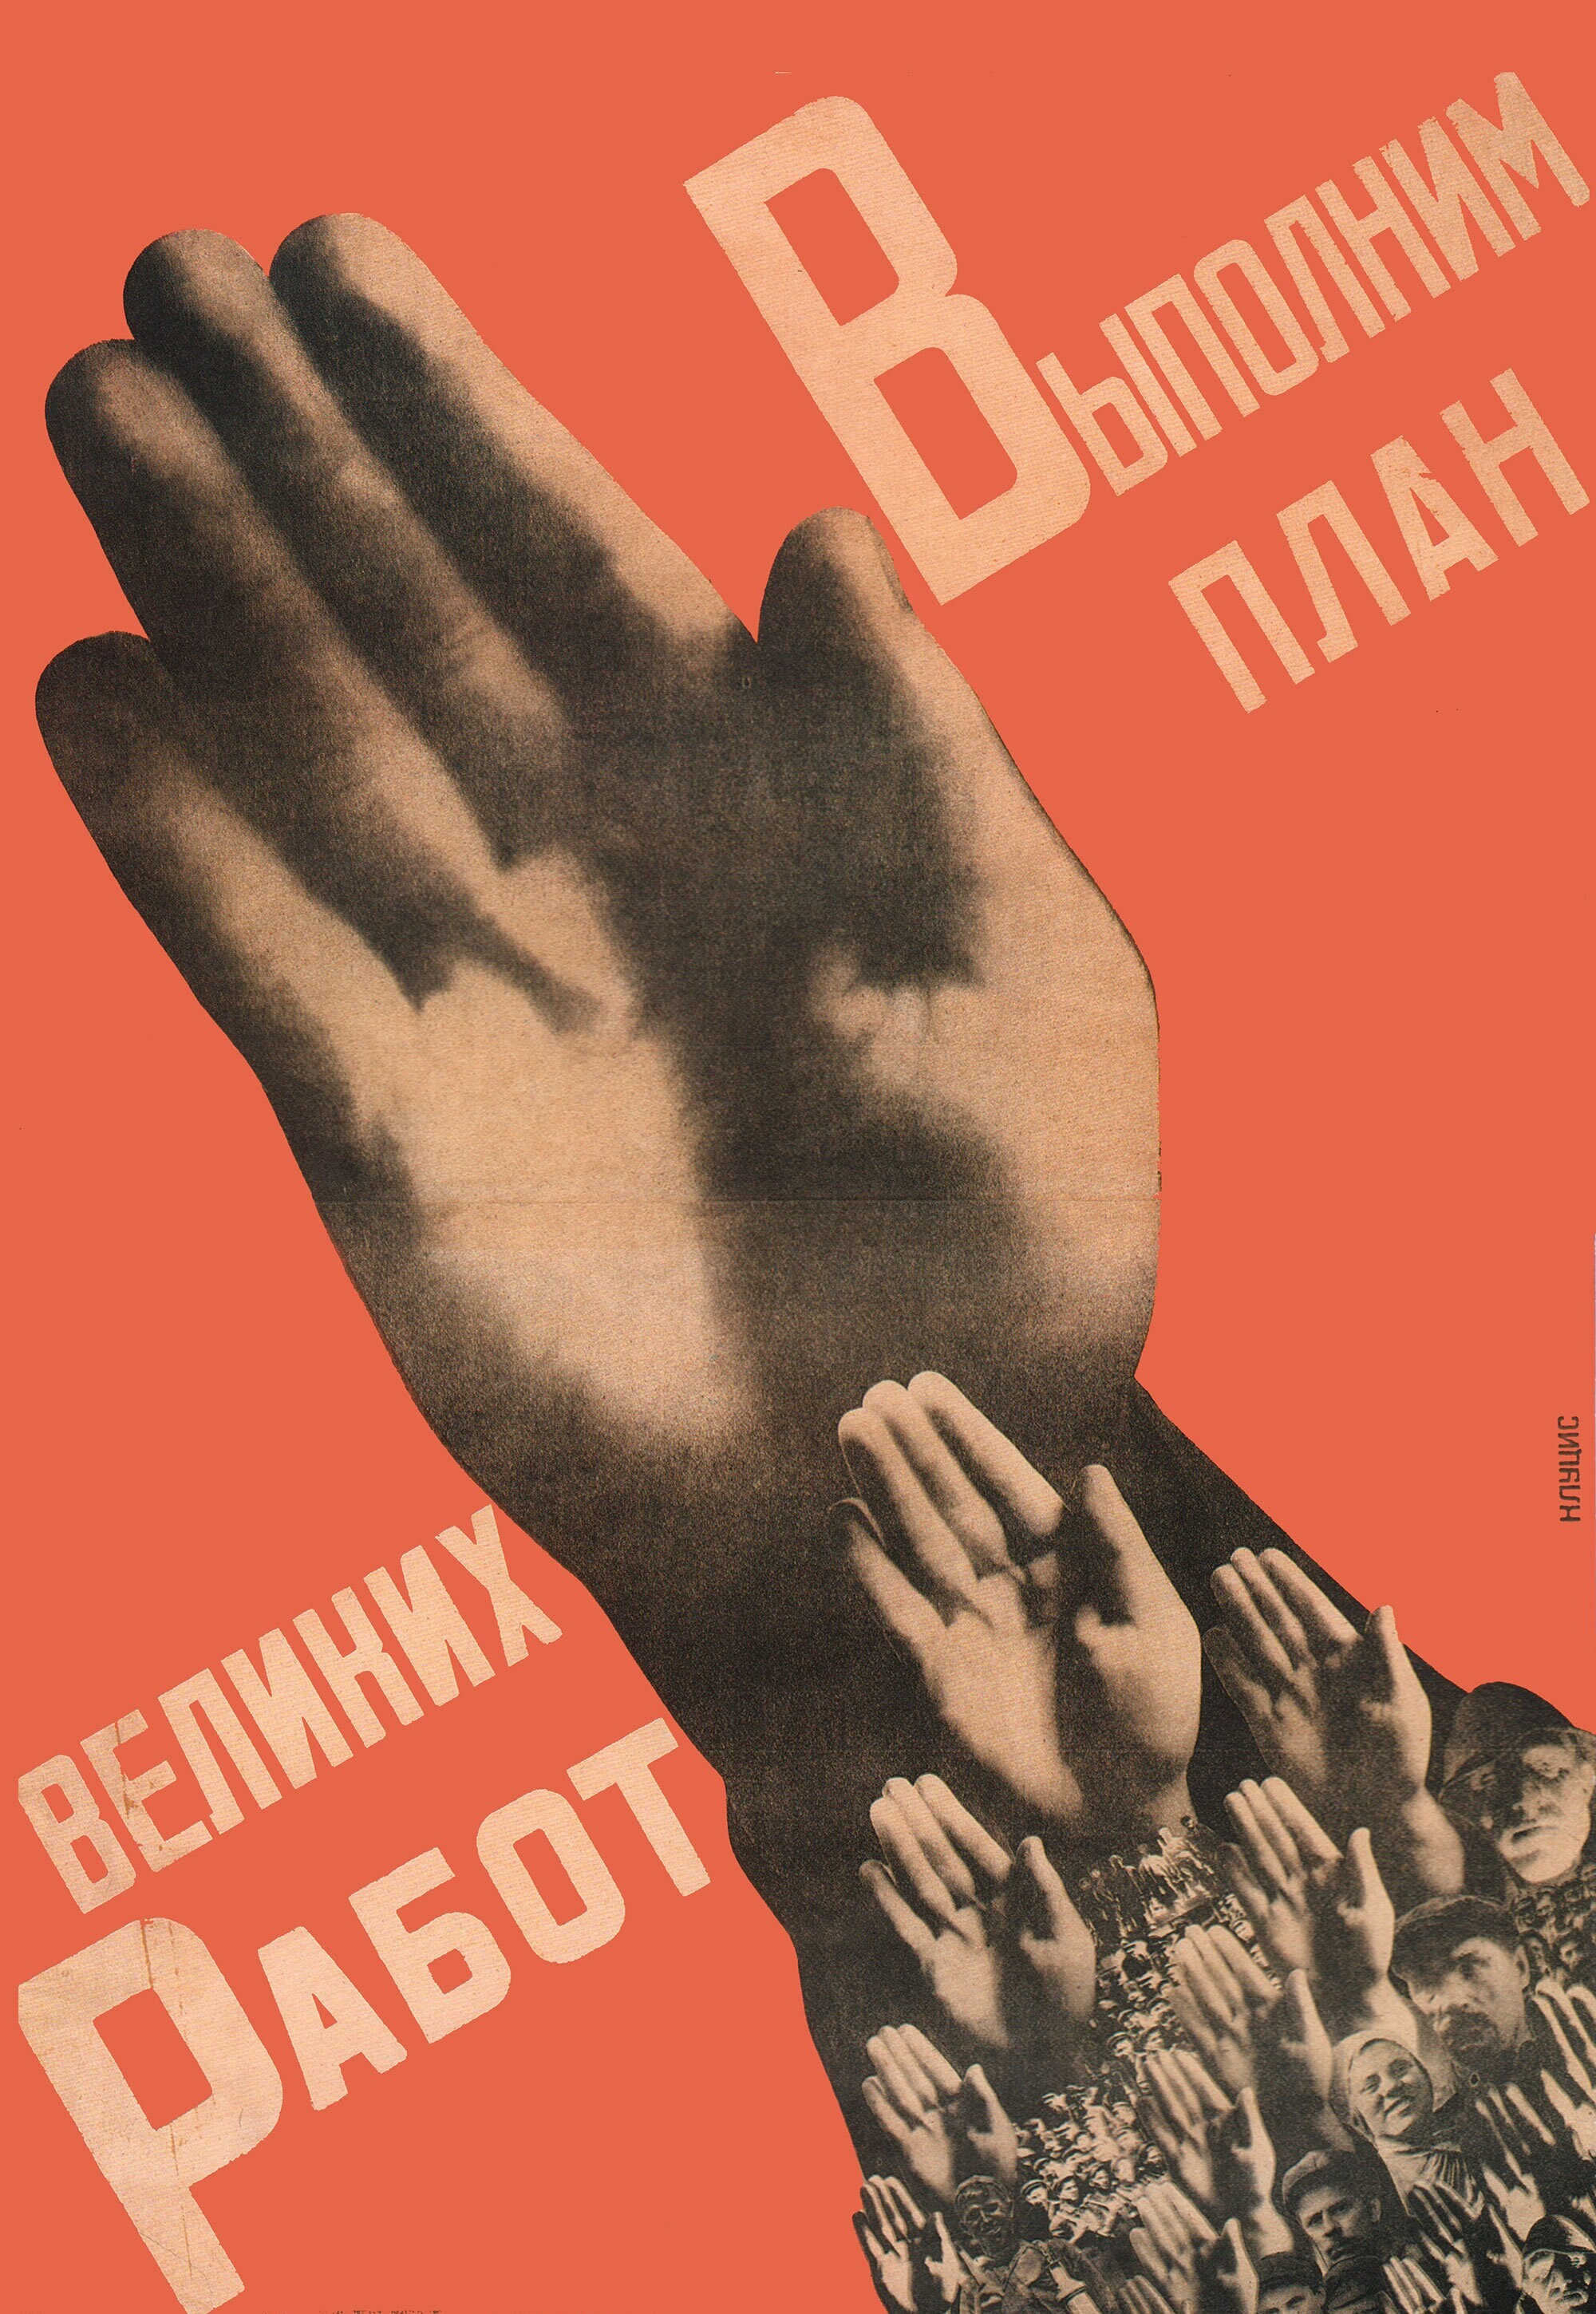 Выполним план великих работ, 1930 год, плакат, автор Густав Клуцис (авангардное советское искусство, 1920-е)